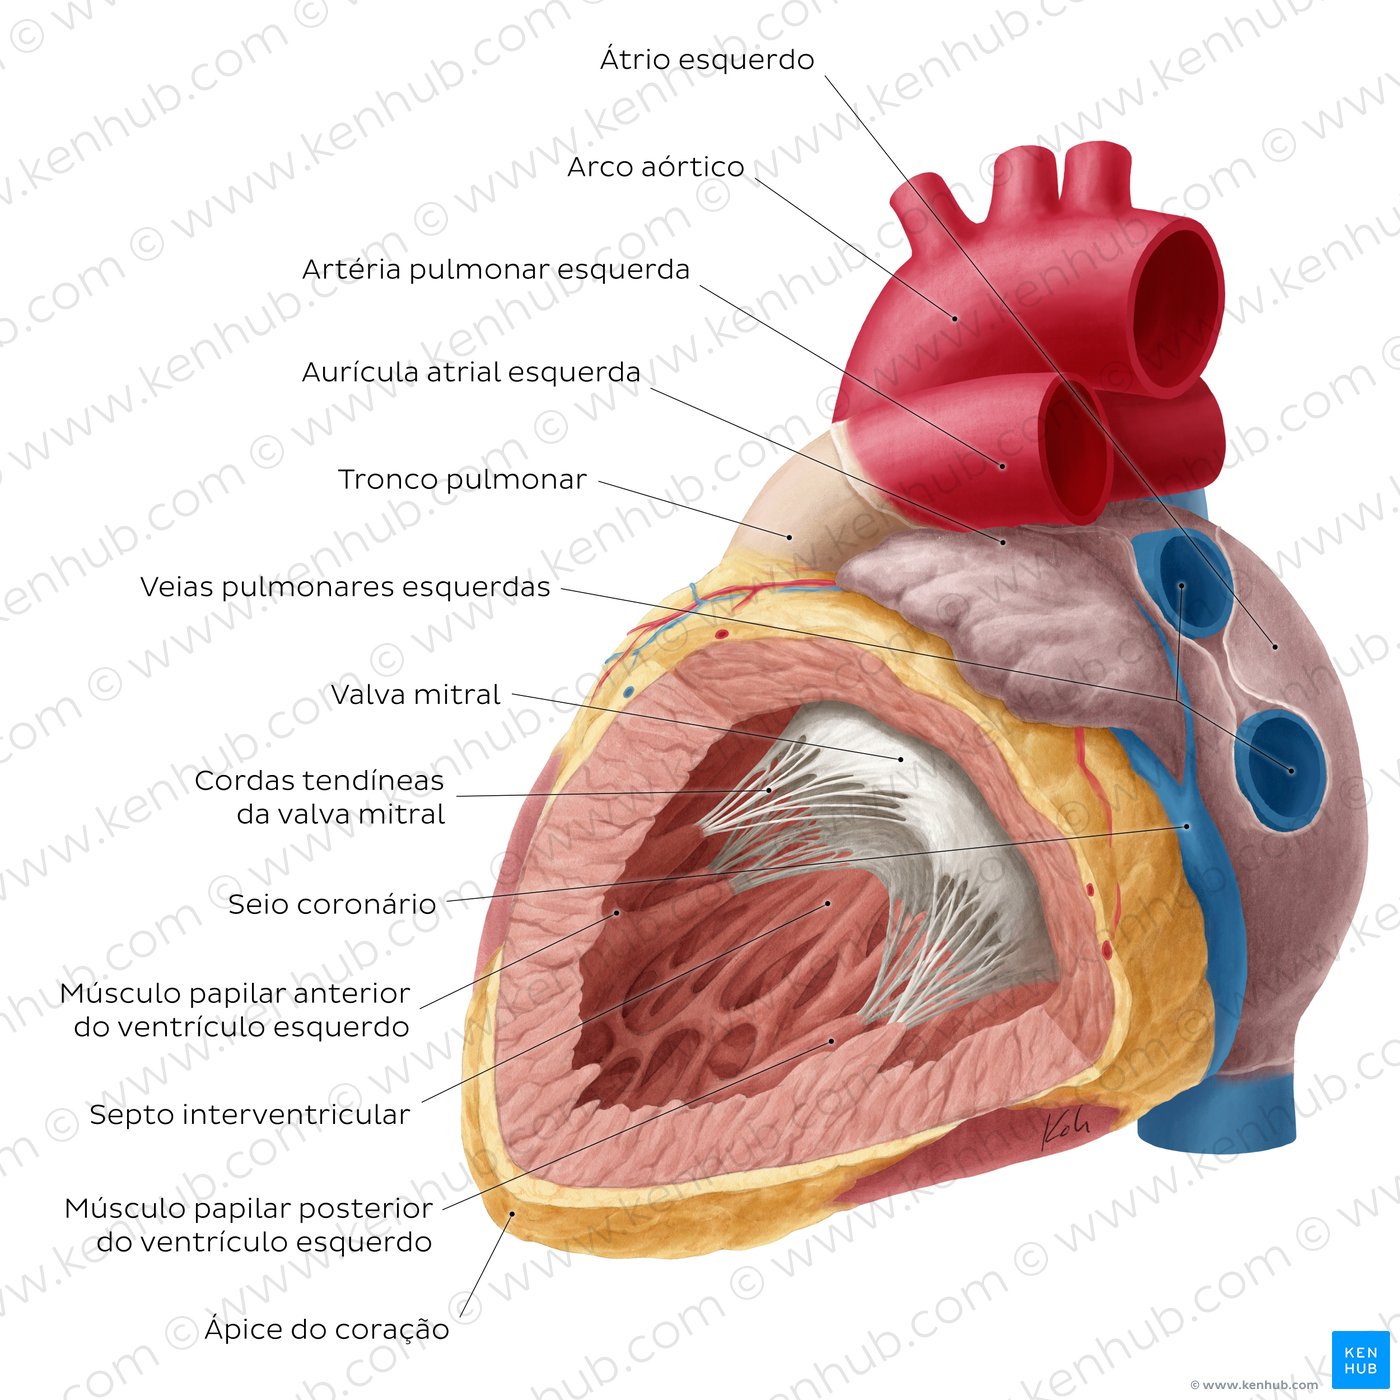 Visão geral do átrio e ventrículo esquerdos